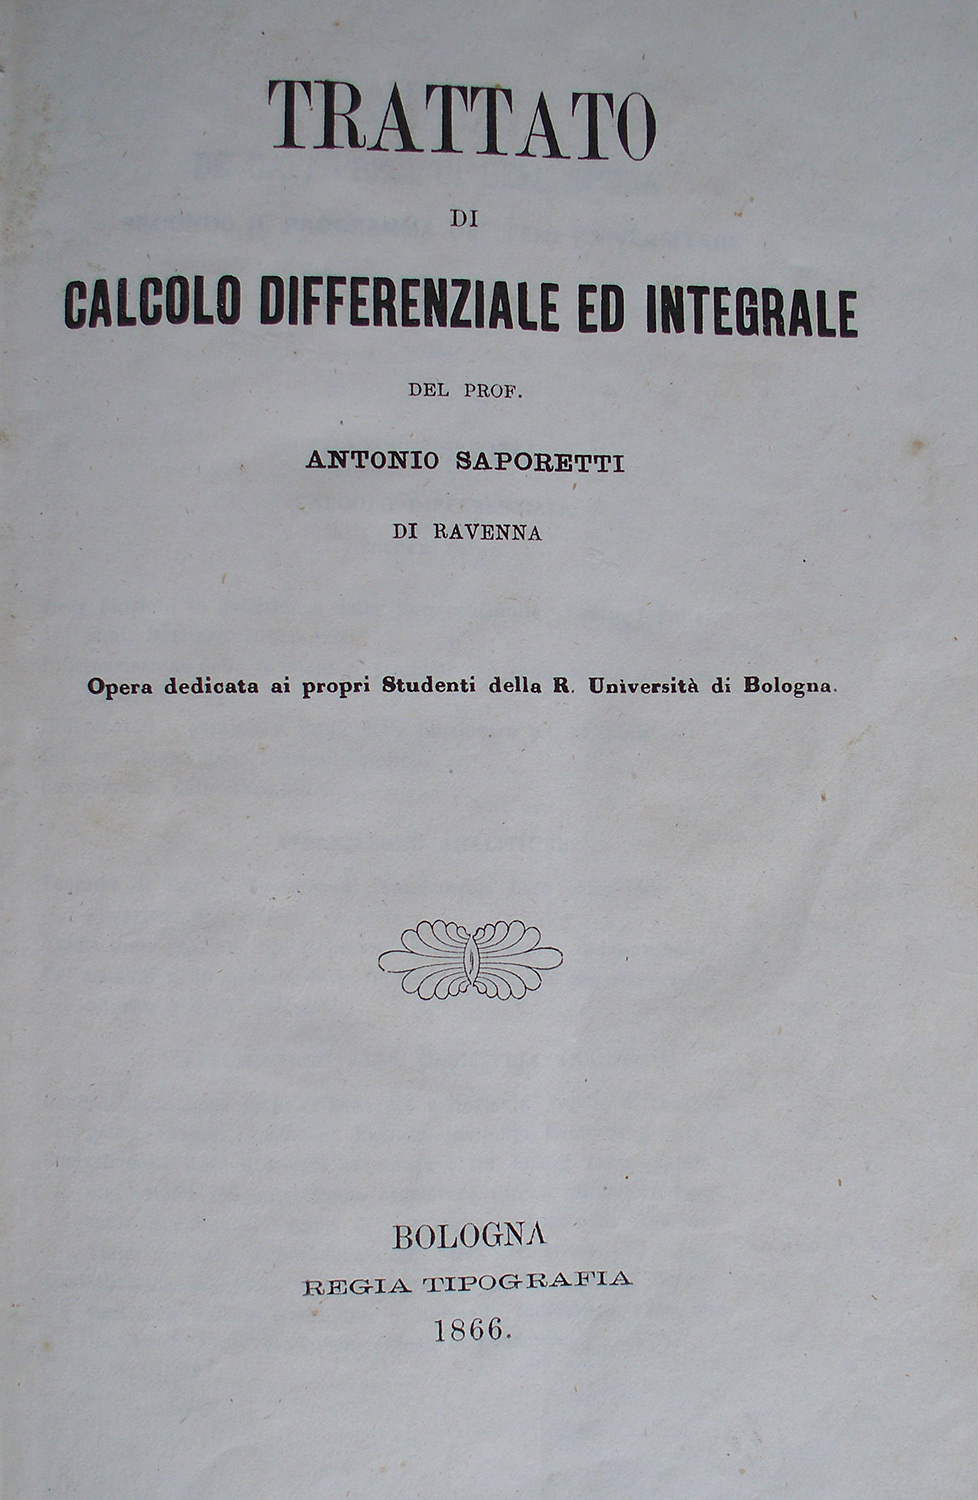 Trattato di calcolo differenziale ed integrale di Antonio Saporetti